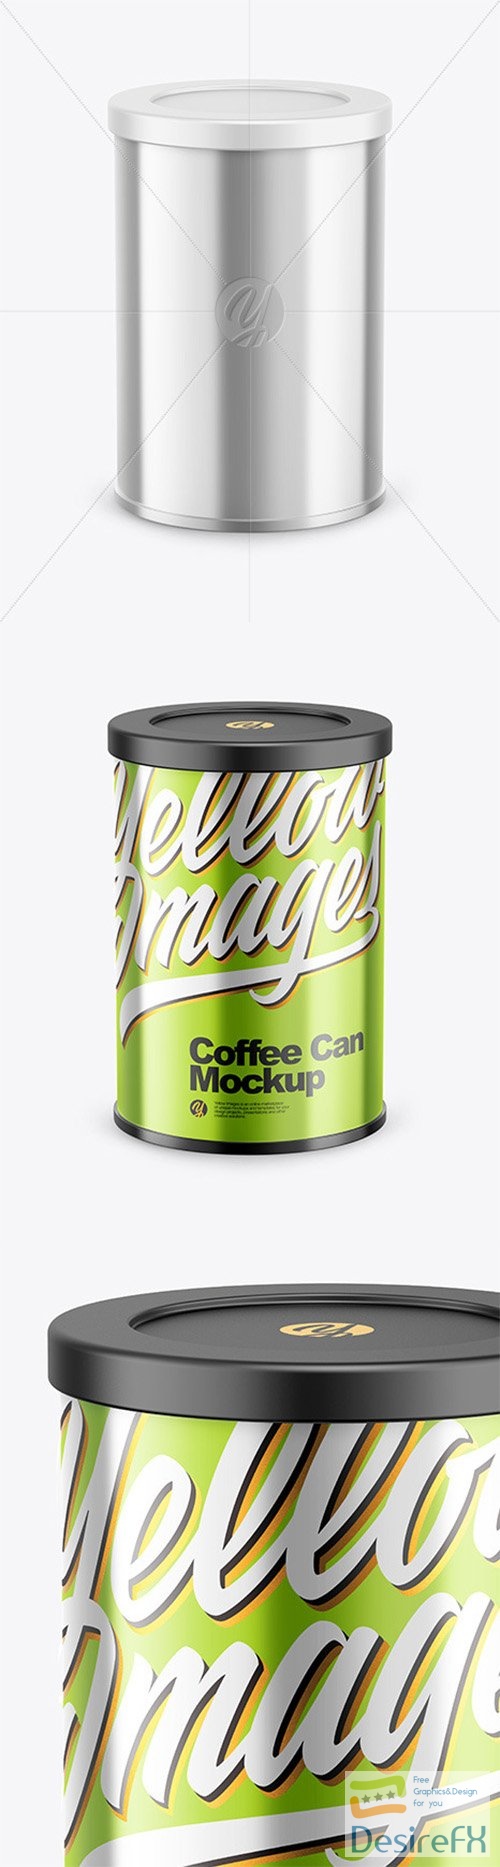 Coffee Tin Can with Glossy Metallic Finish Mockup 80612 TIF